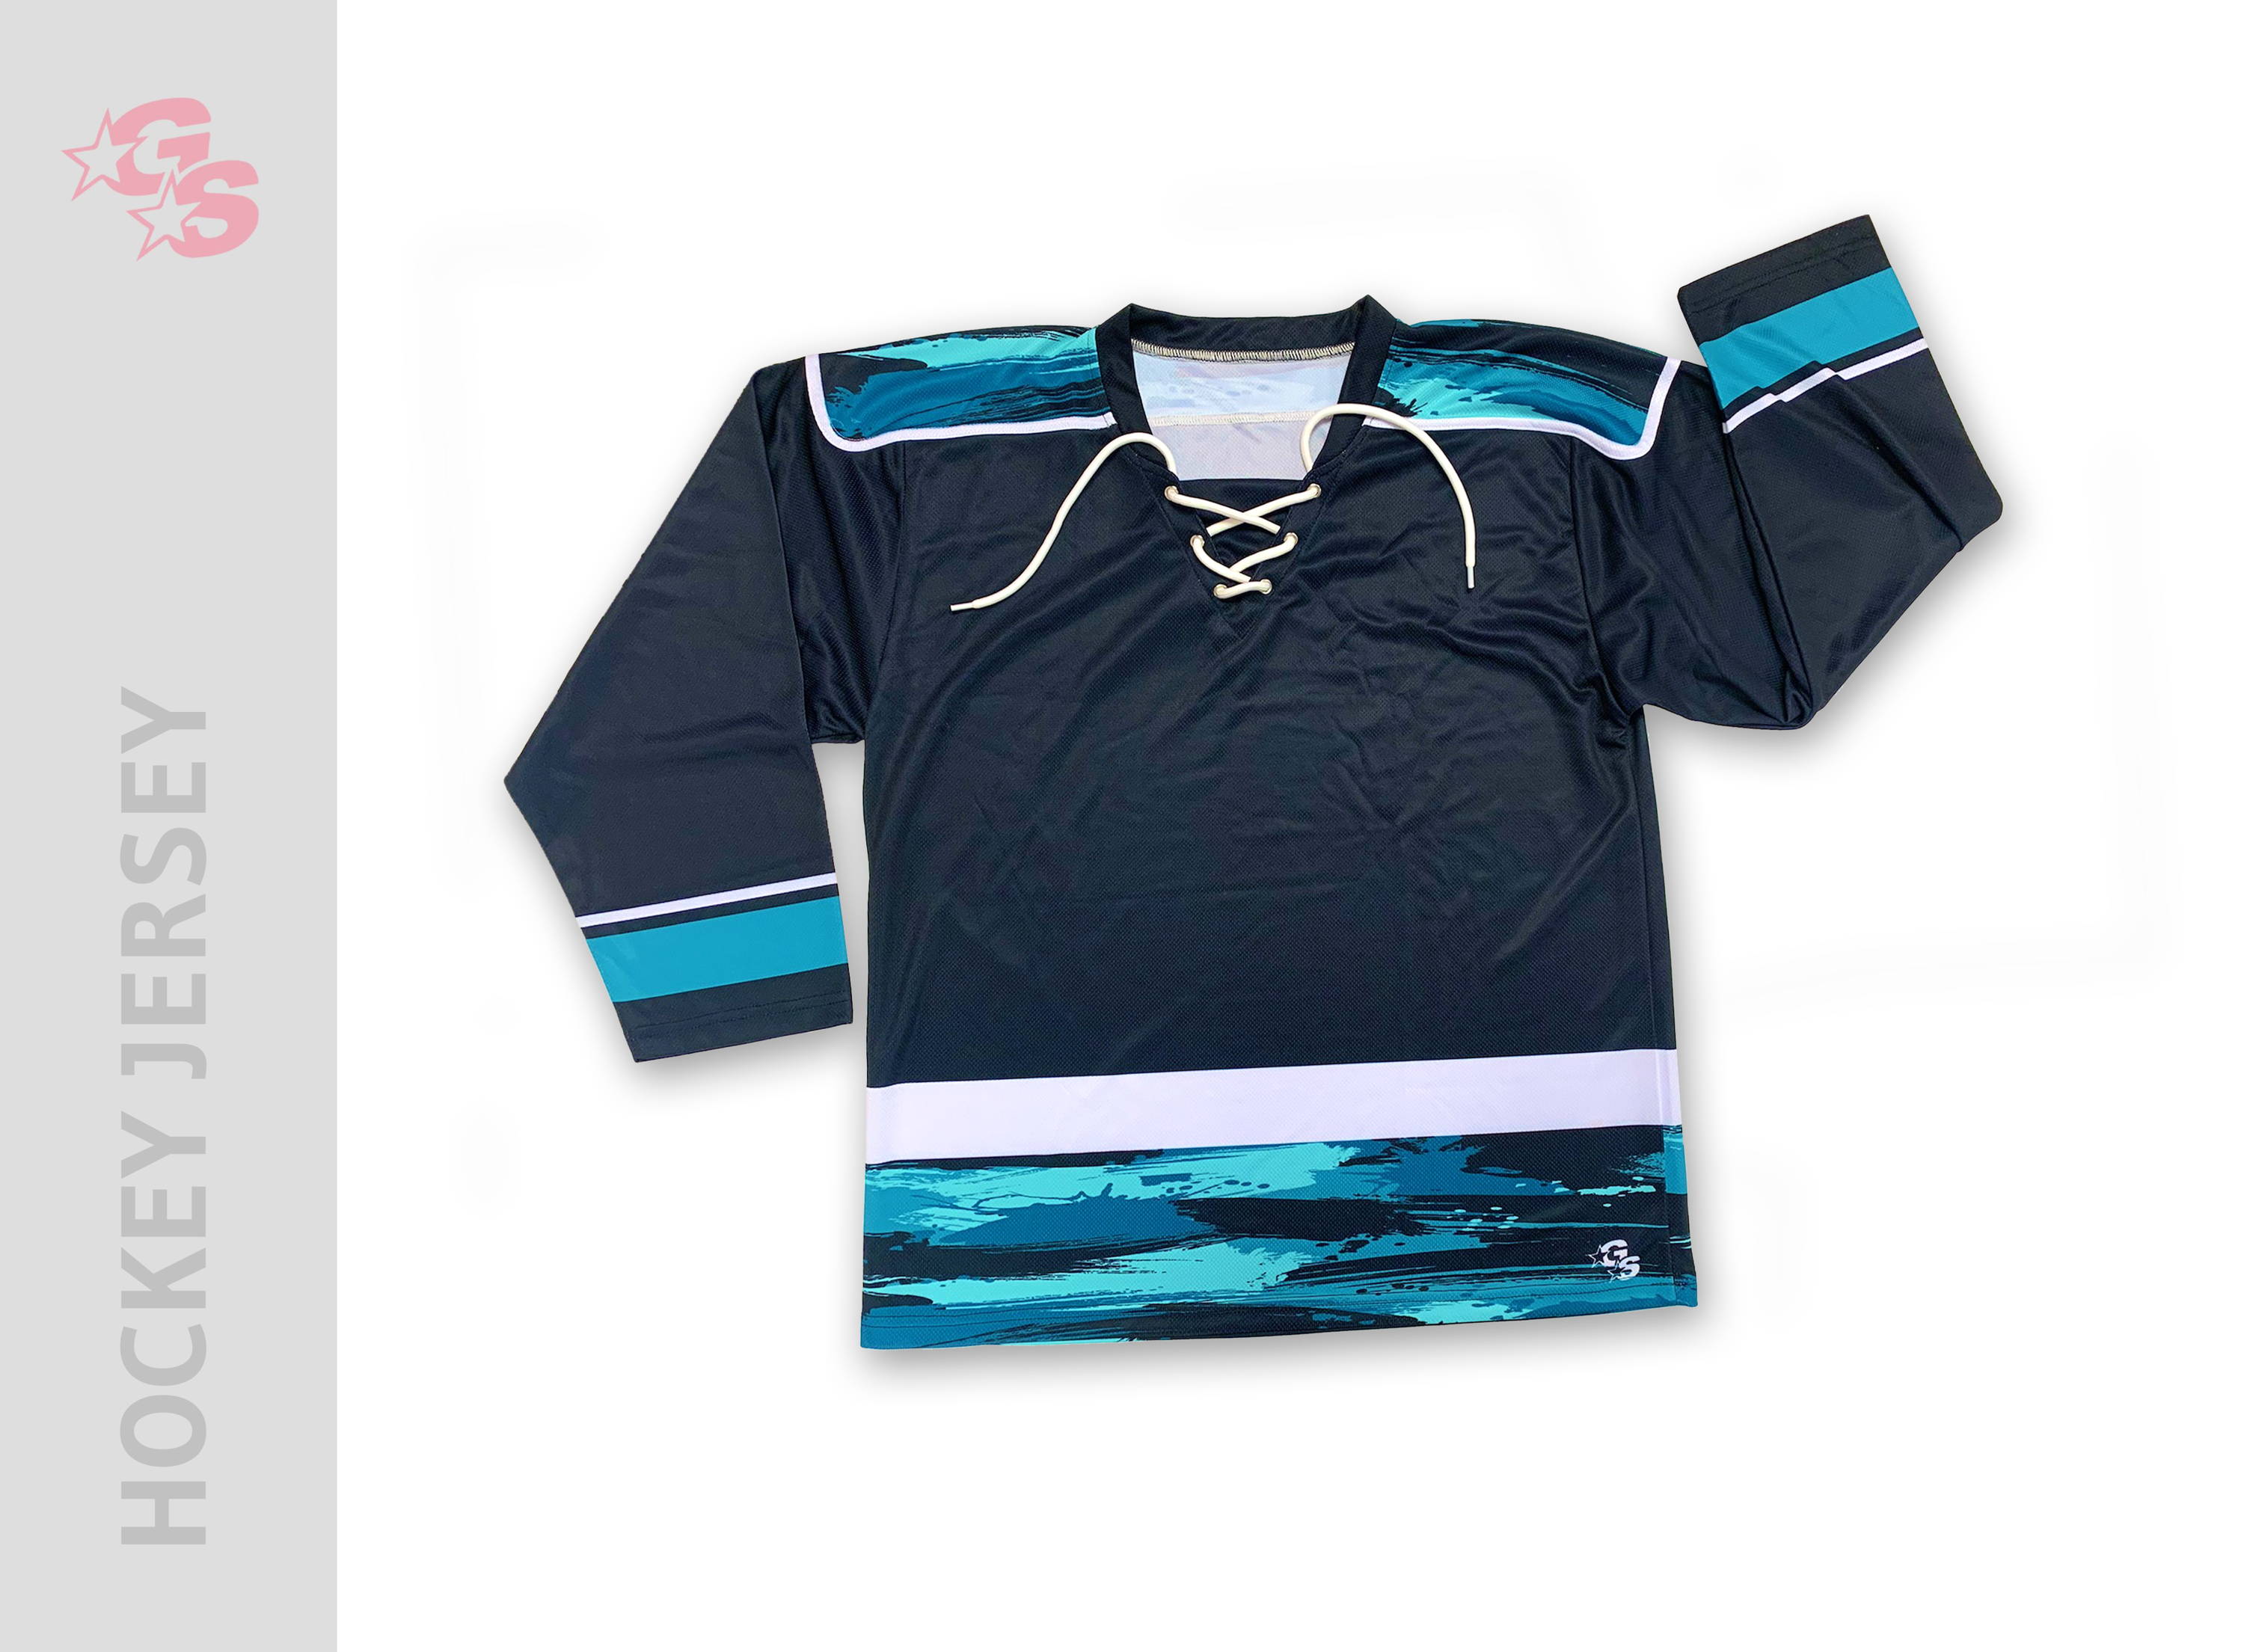  HSX Tees Customize Green/Navy/Light Blue Hockey Jersey